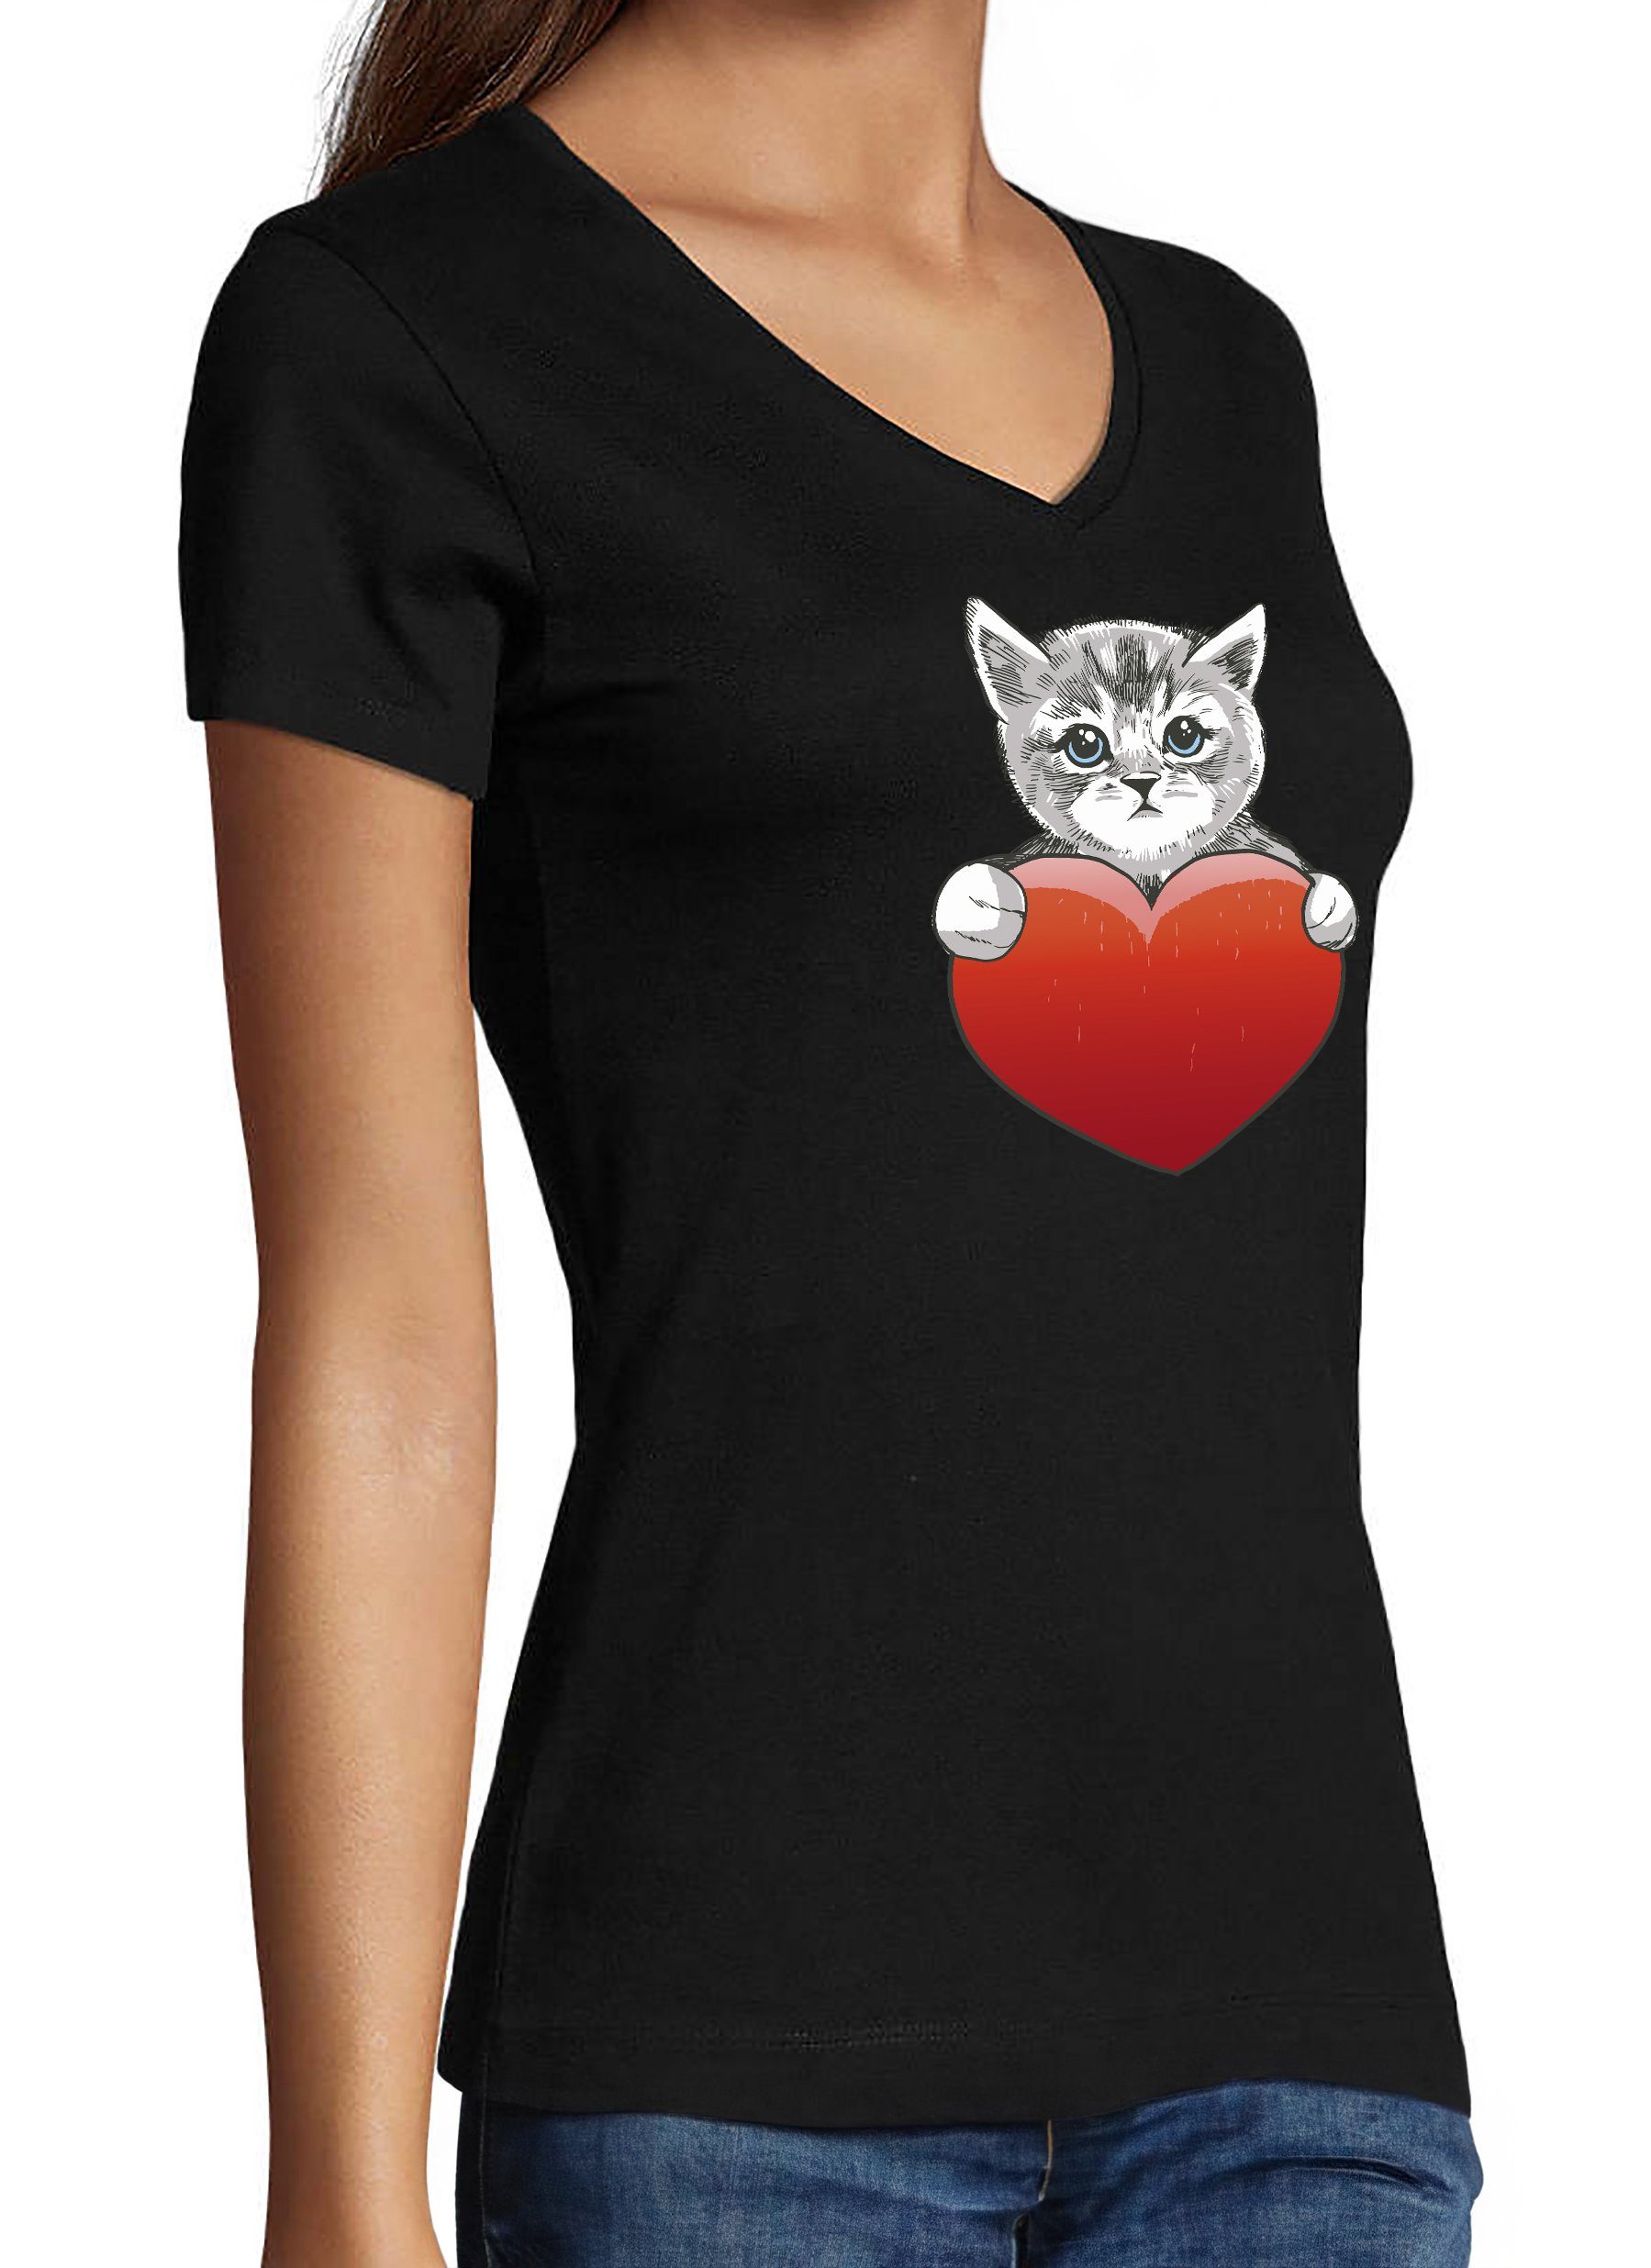 Damen T-Shirt Katzen bedruckt Fit, Shirt - schwarz MyDesign24 Katze mit rotem Baumwollshirt Slim Herz Print Aufdruck, mit i120